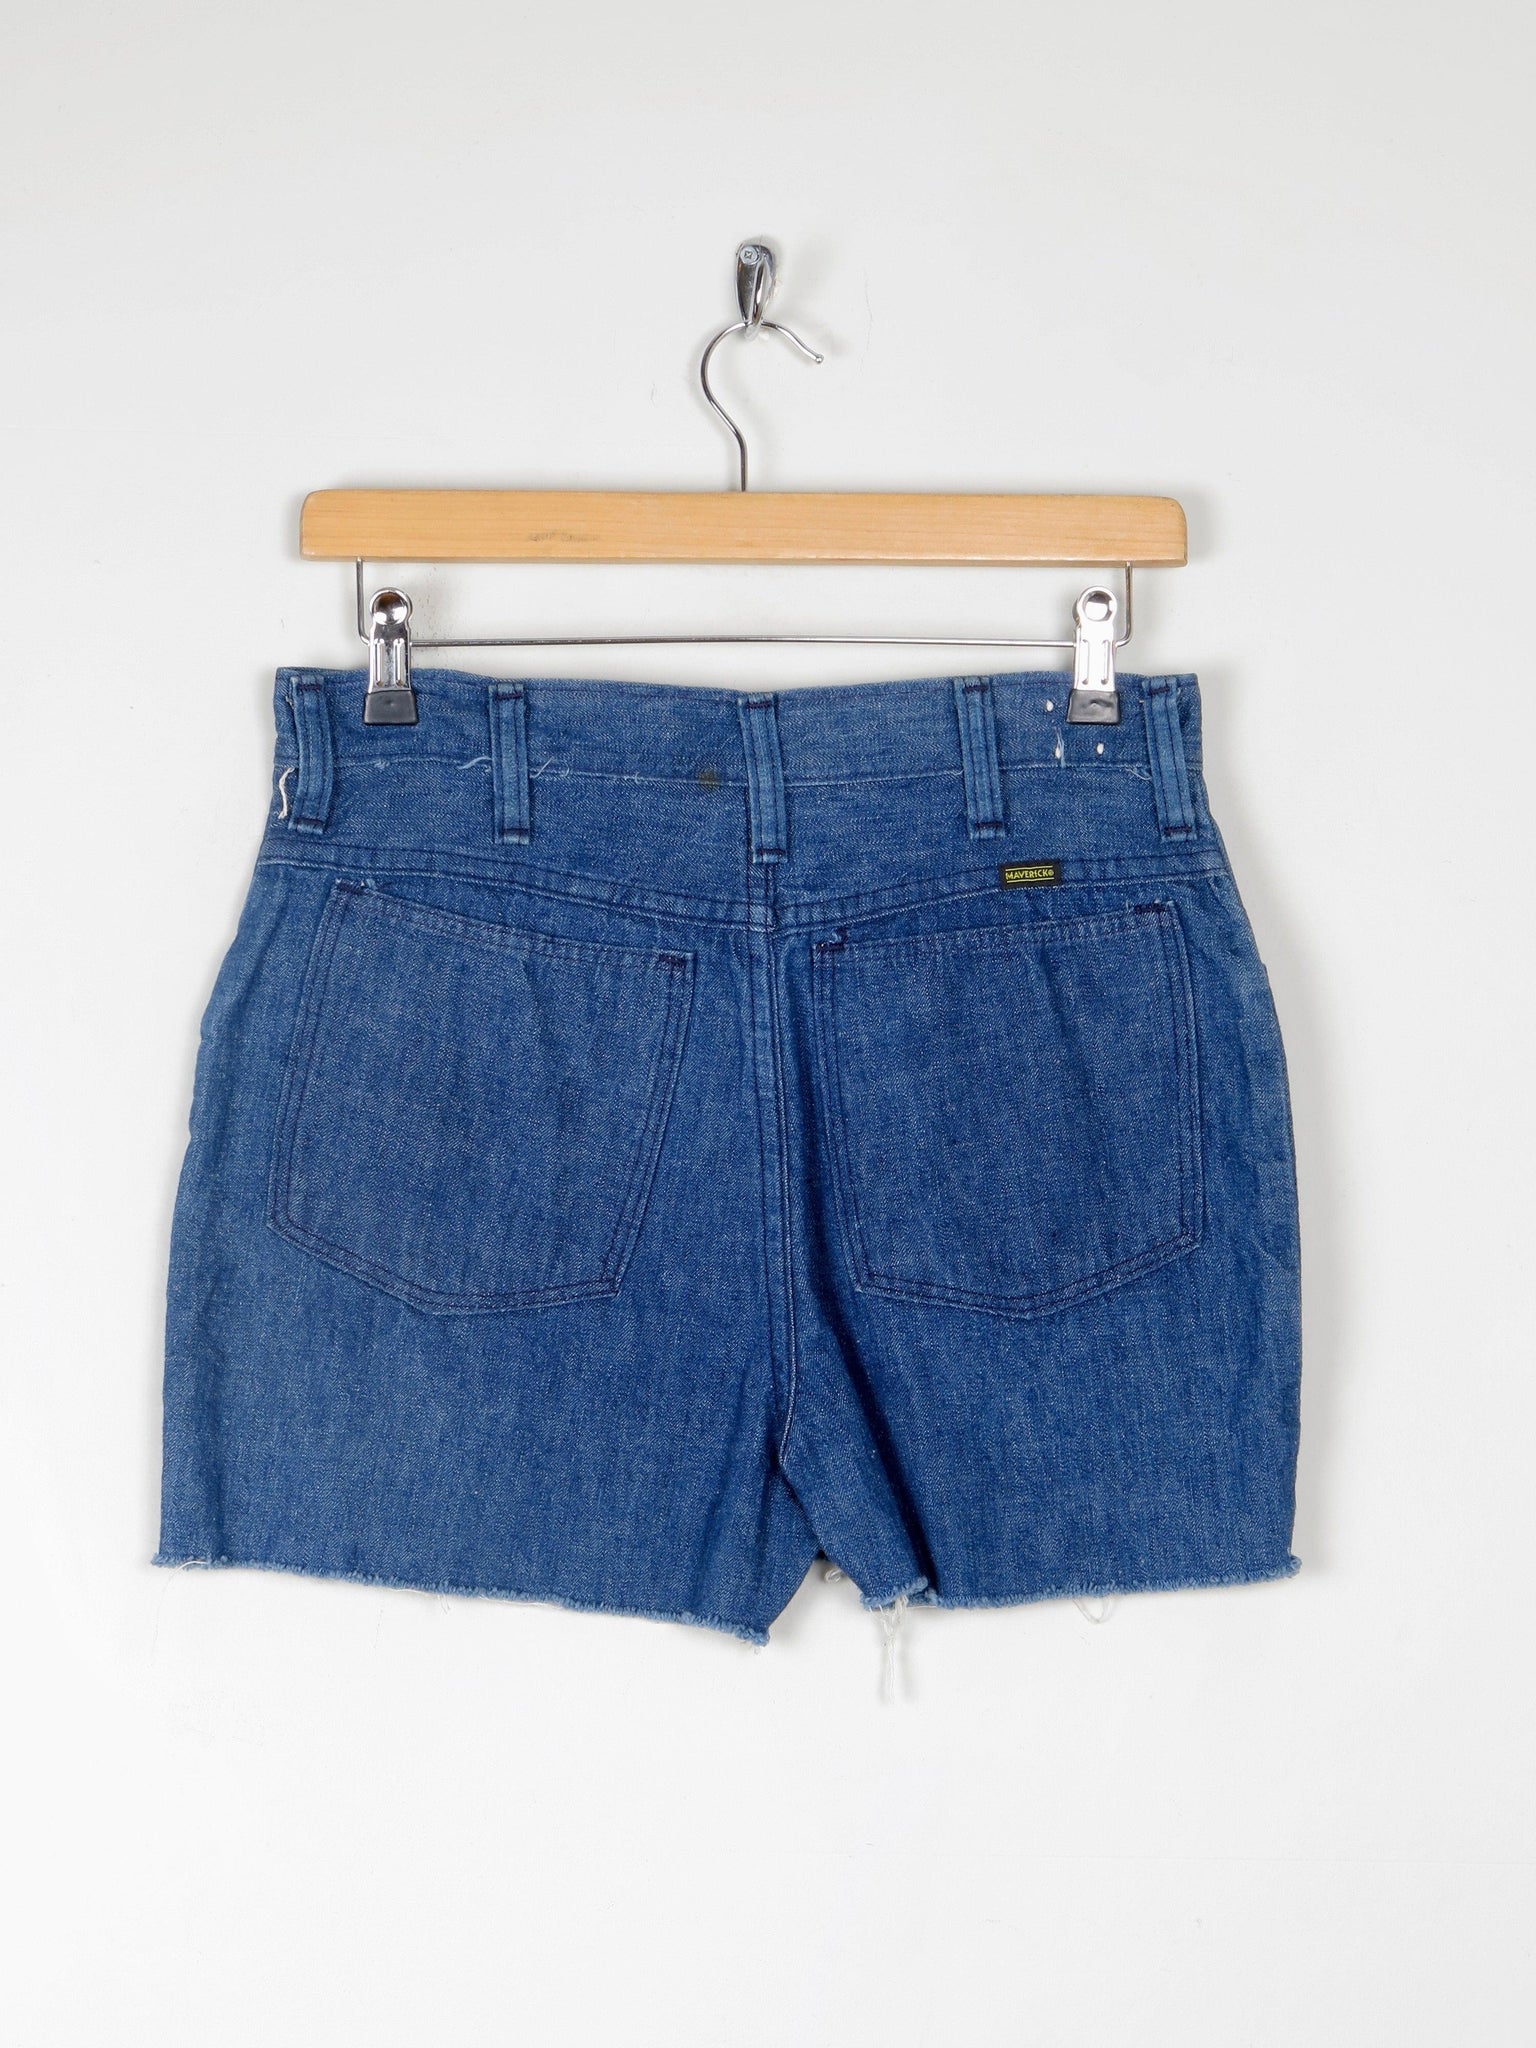 Wrangler/ Maverick  Vintage Cut Off Denim Shorts 10 29" - The Harlequin